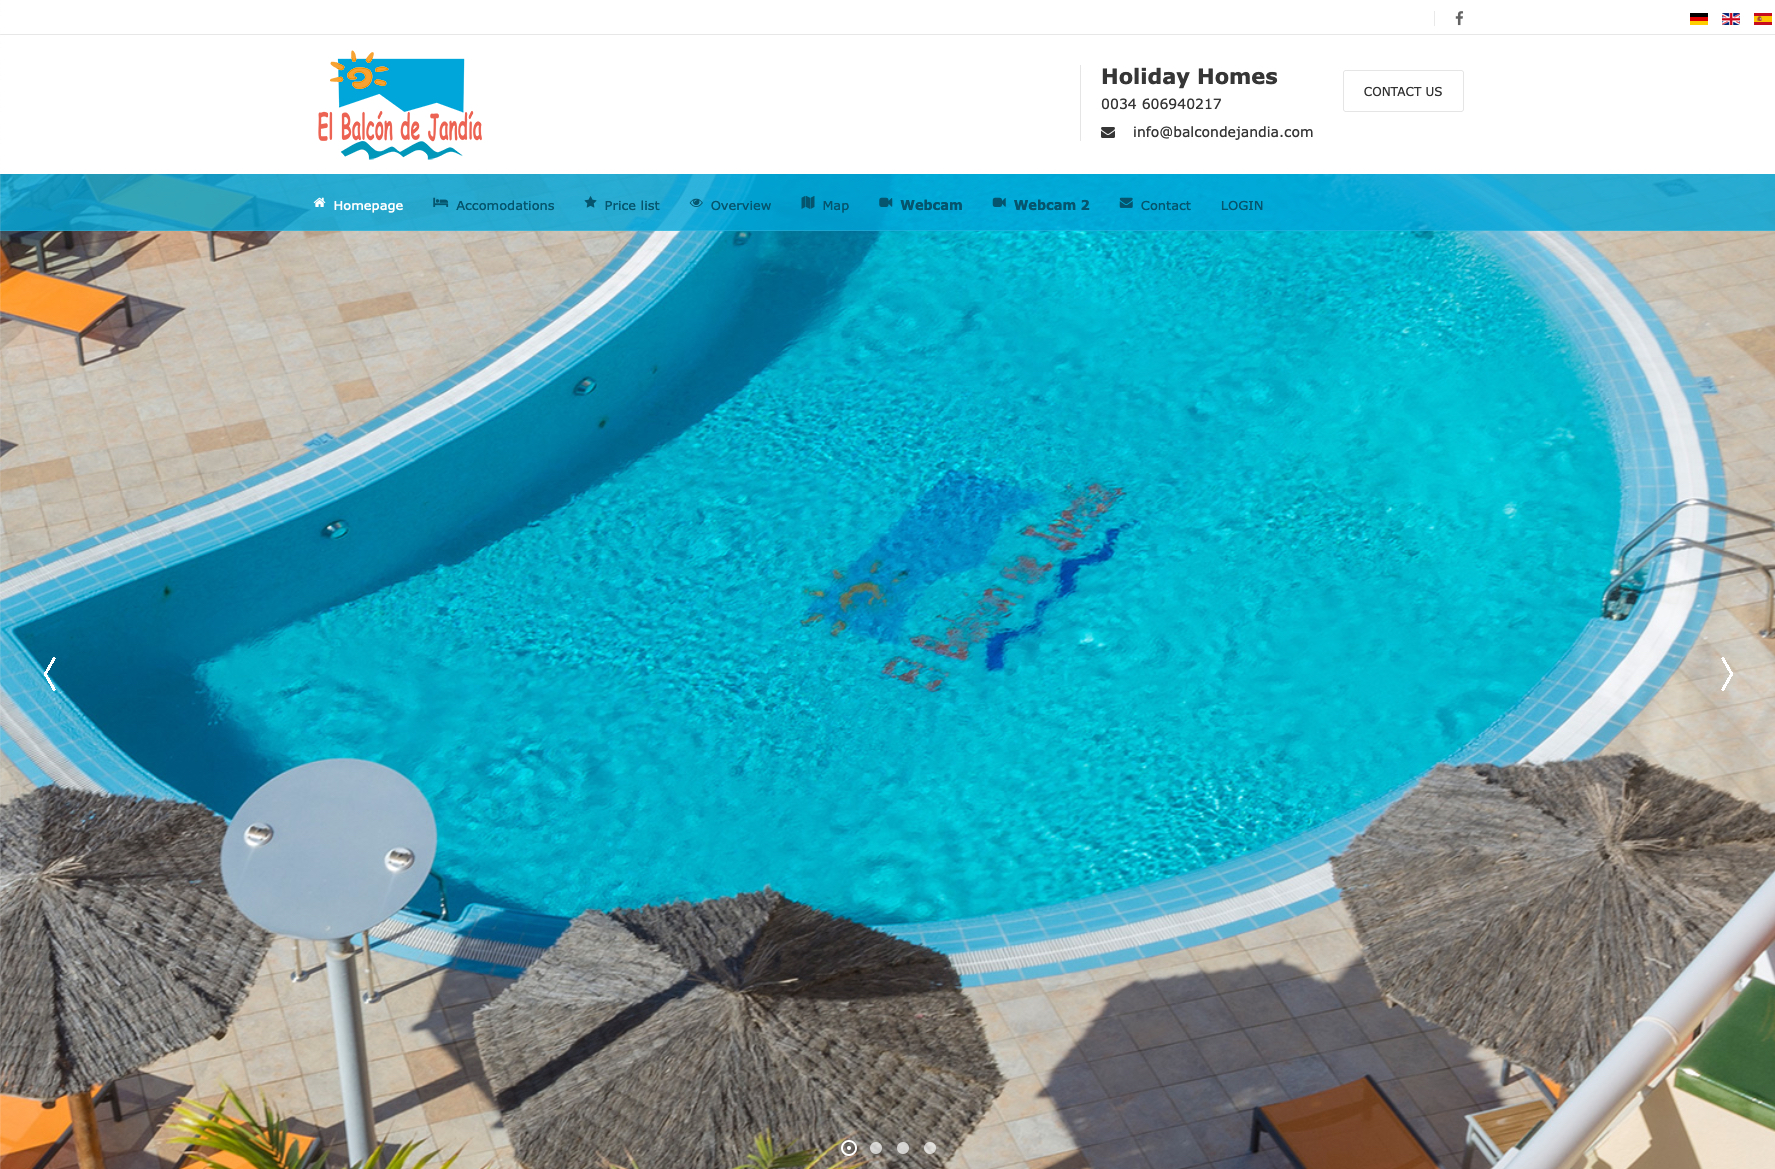 Seien Sie auch auf Fuerteventura unser Gast! www.balcondejandia.com